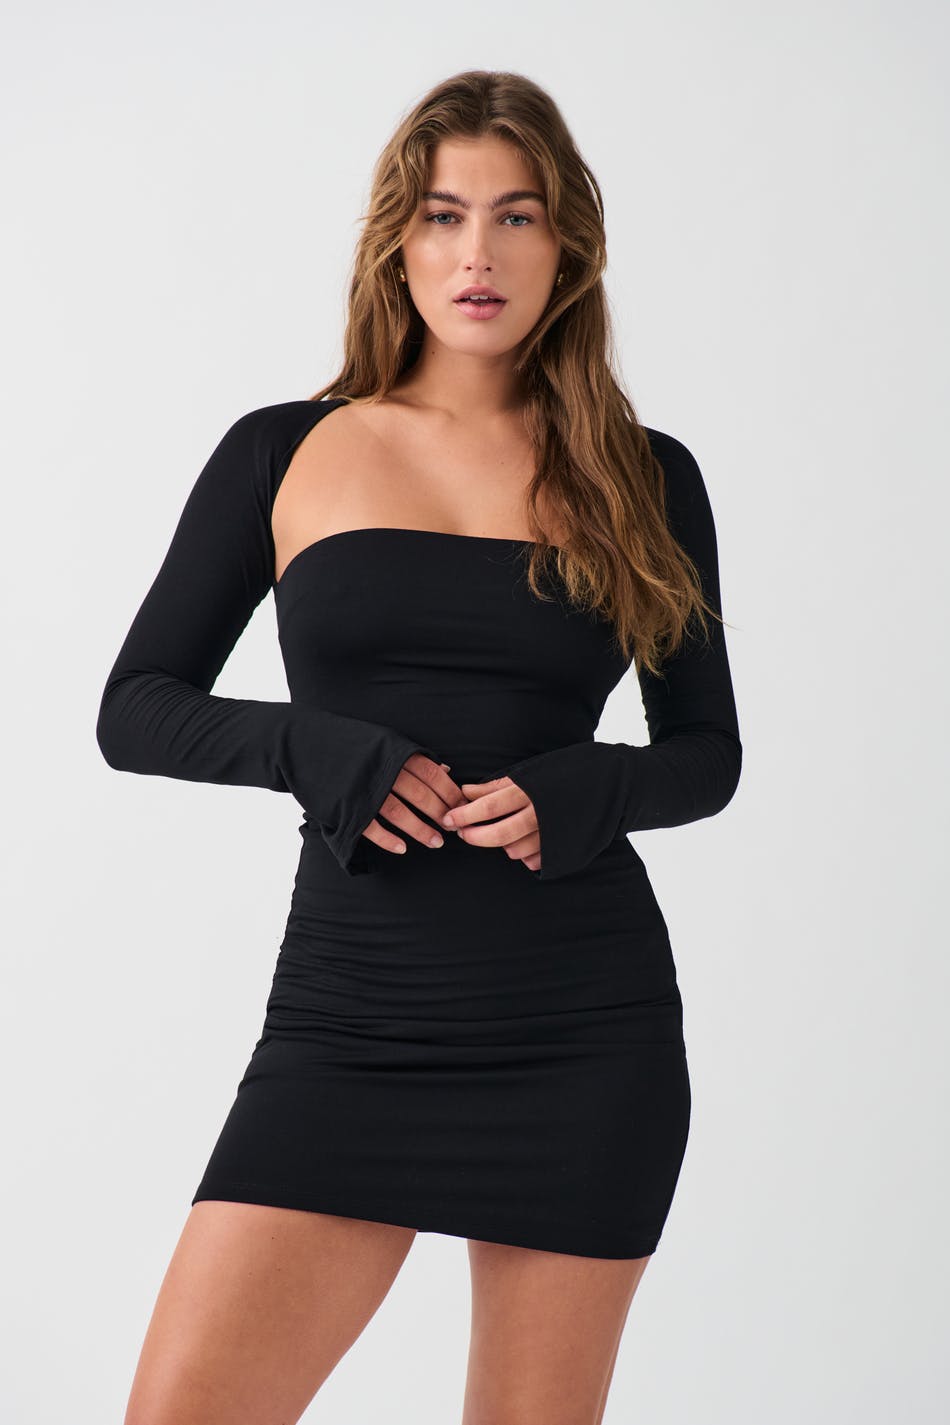 Gina Tricot - Square neck mini dress - miniklänningar - Black - XS - Female